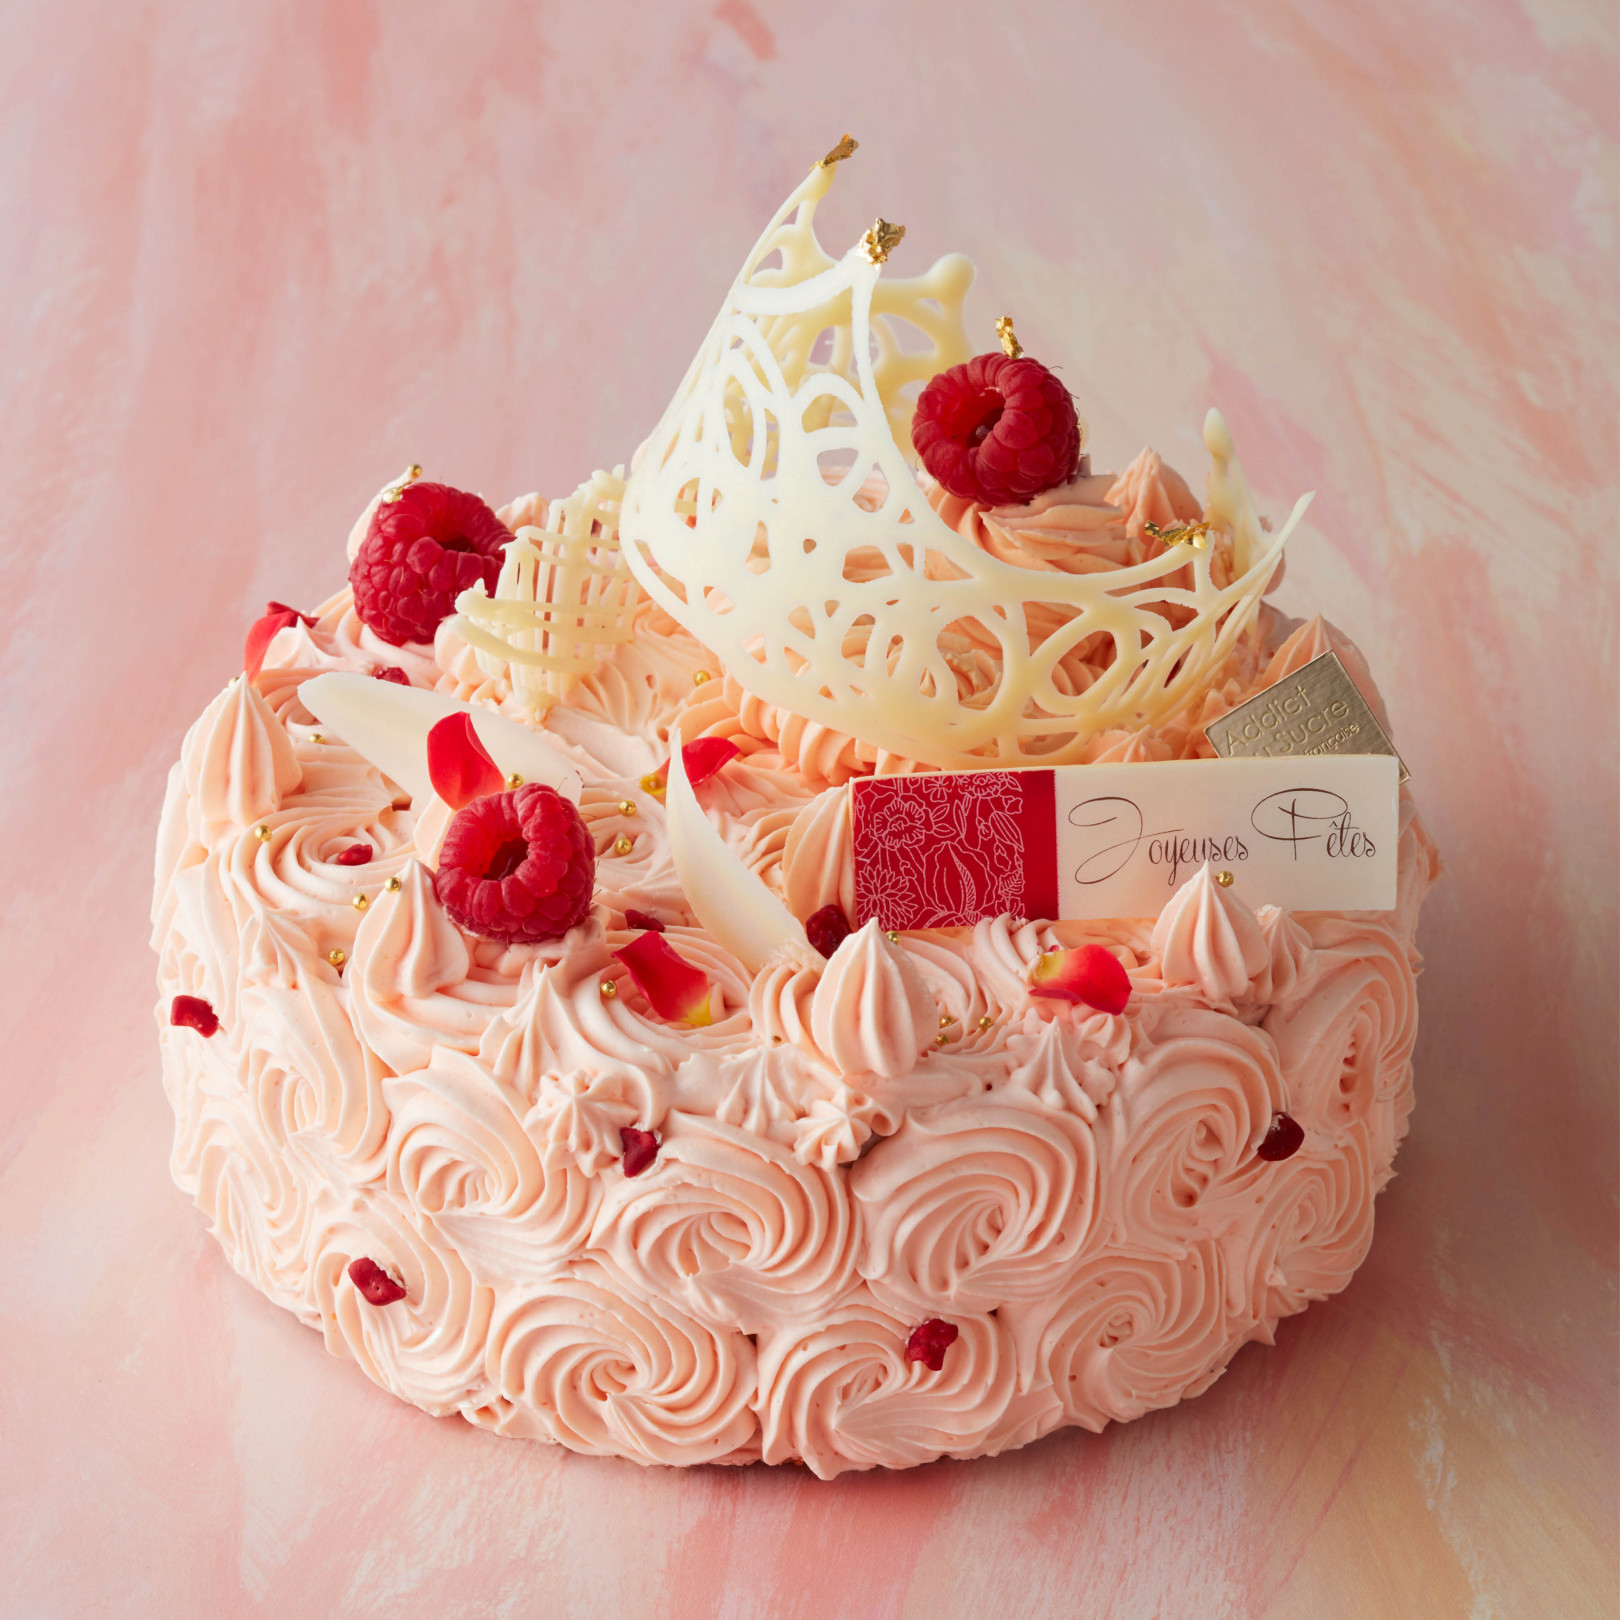 新宿伊勢丹の18年クリスマスケーキの予約がスタート 毎年話題のケーキ断面図も公開 Gourmet Fashion Headline